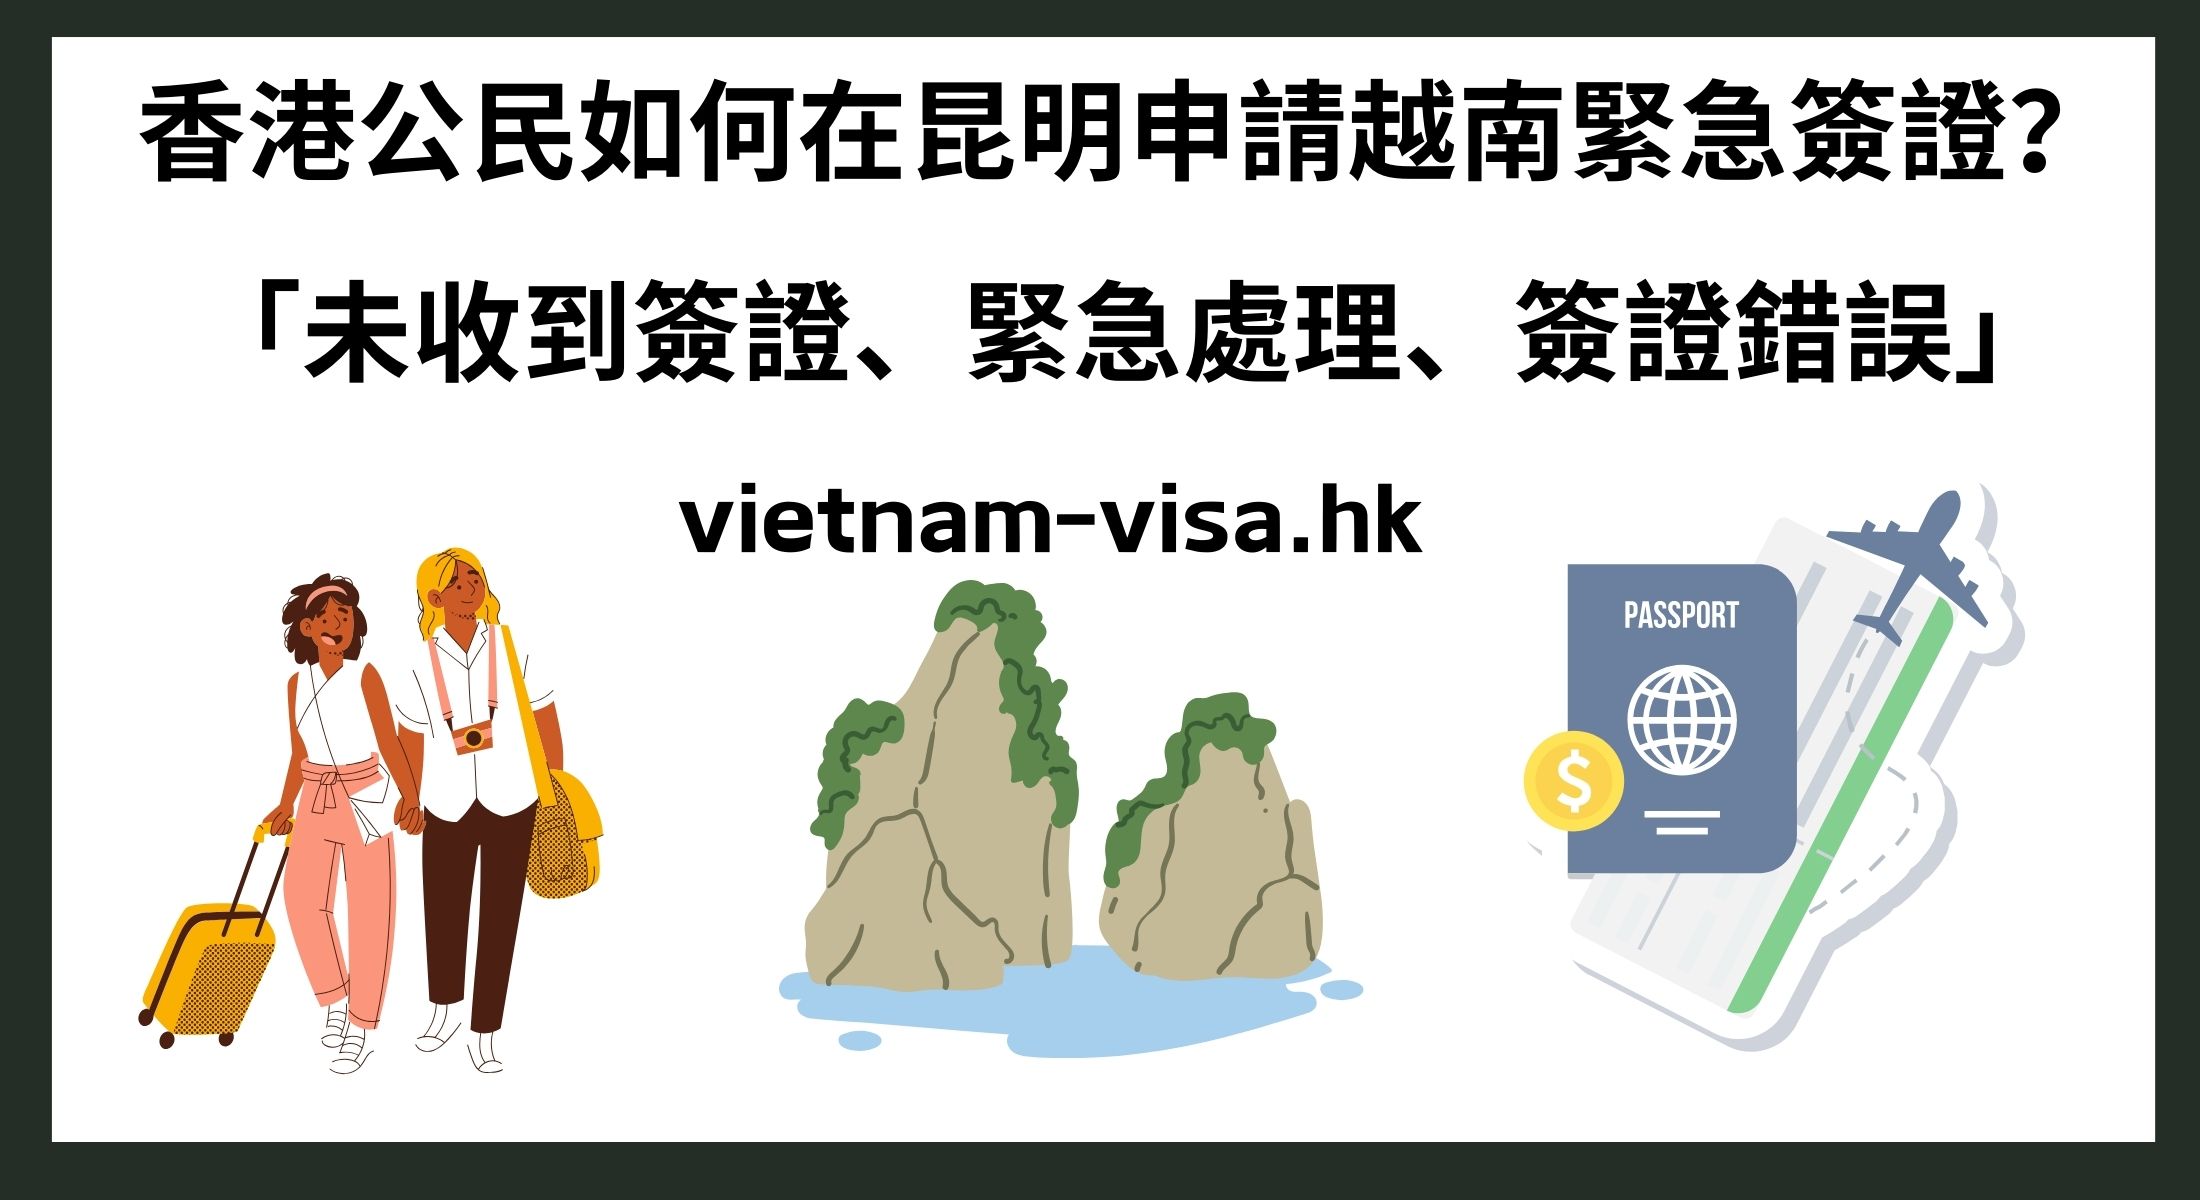 香港公民如何在昆明申請越南緊急簽證？ 「未收到簽證、緊急處理、簽證錯誤」